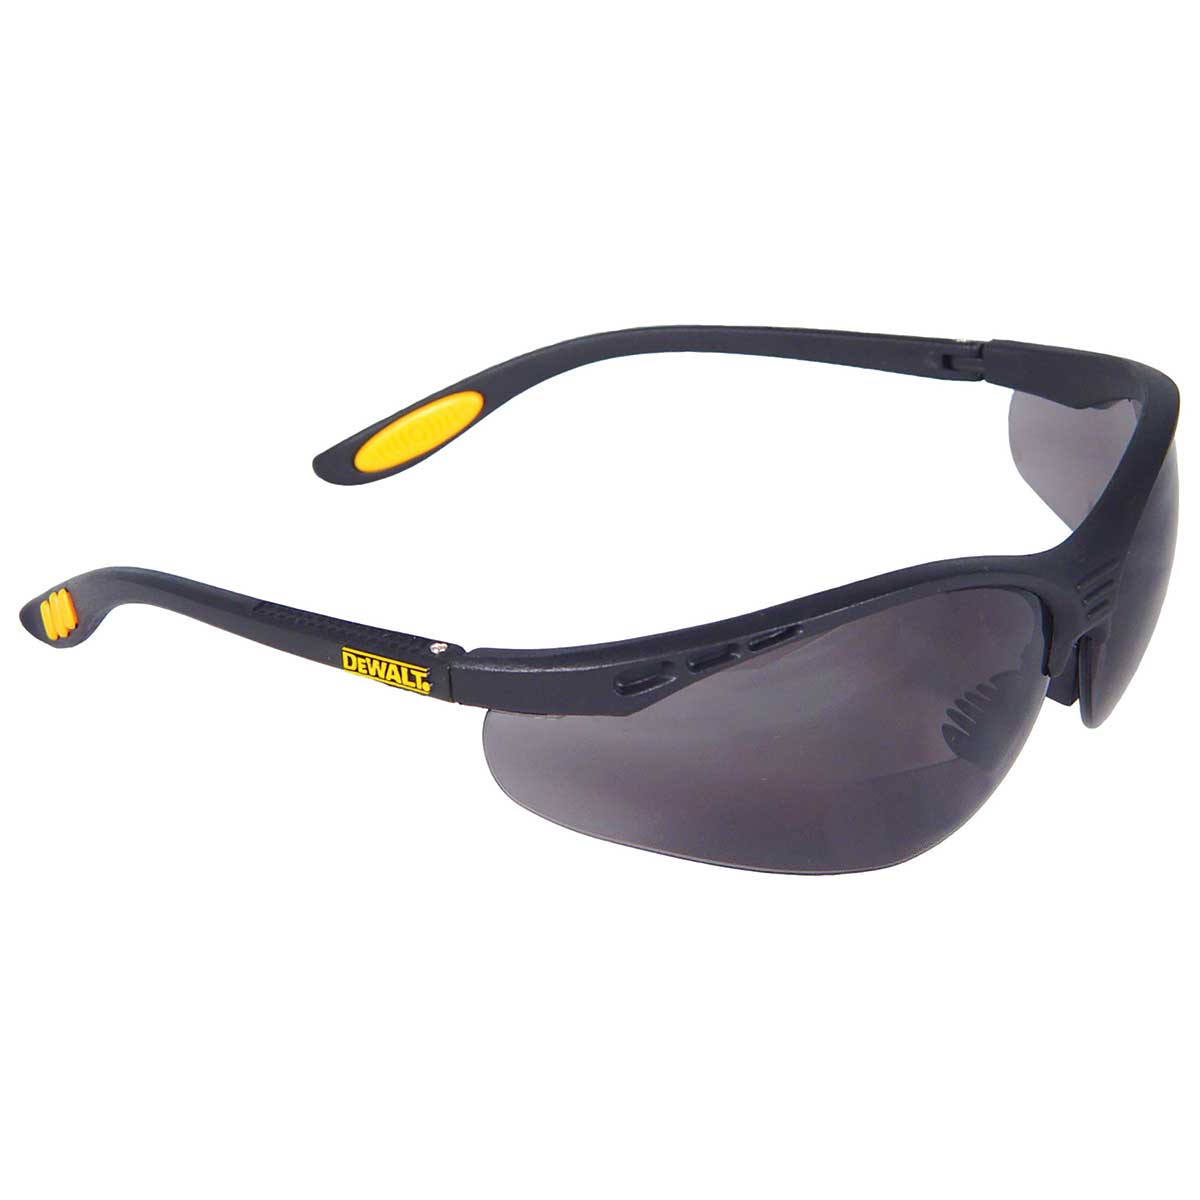 DEWALT Reinforcer Rx Safety Glasses